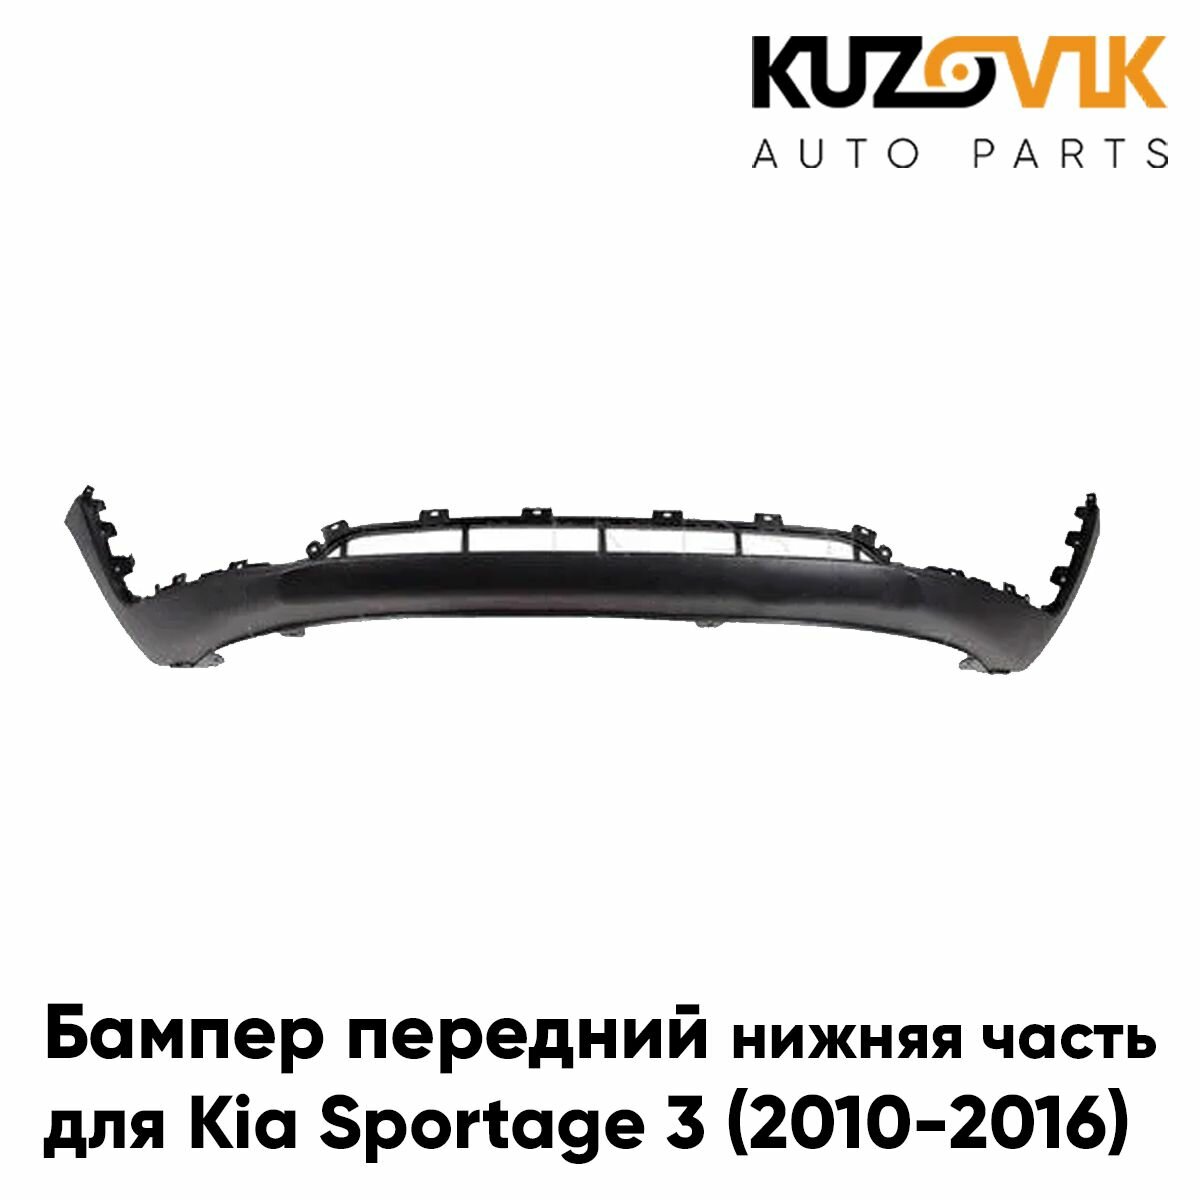 Бампер передний для Киа Спортейдж Kia Sportage 3 (2010-2016) нижняя часть спойлер накладка